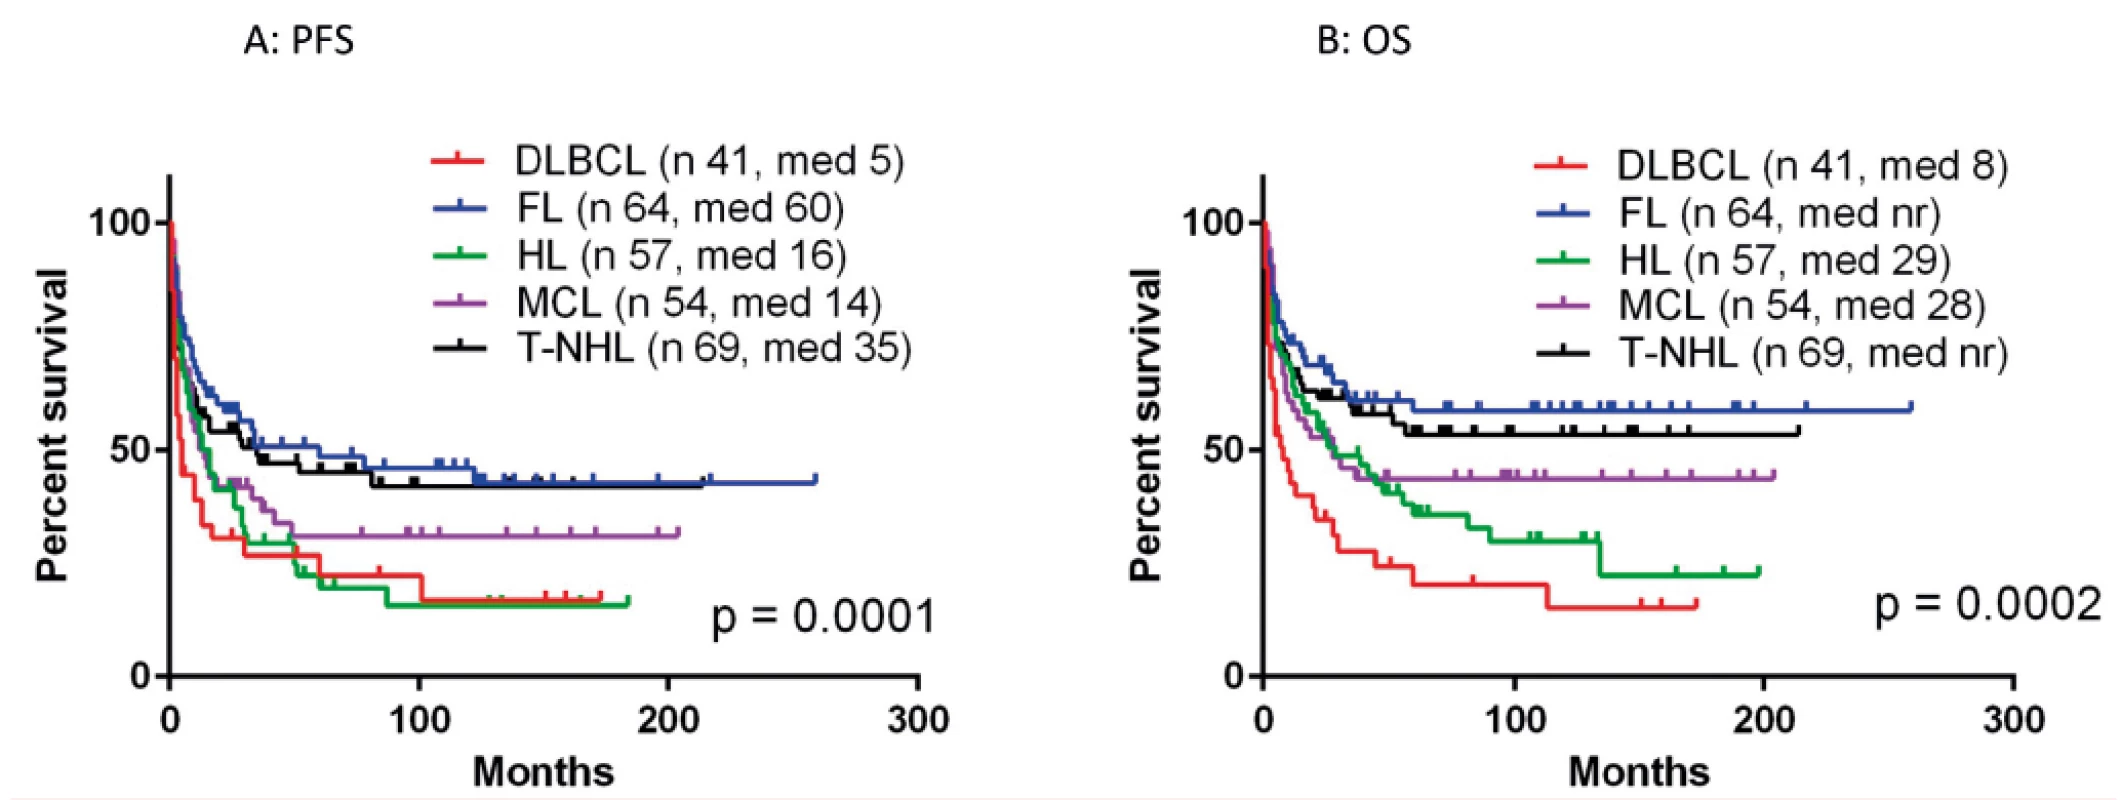 Výsledky aloSCT pro jednotlivé typy lymfomů<br>
A: doba do progrese či úmrtí (PFS)<br>
B: celkové přežití (OS)